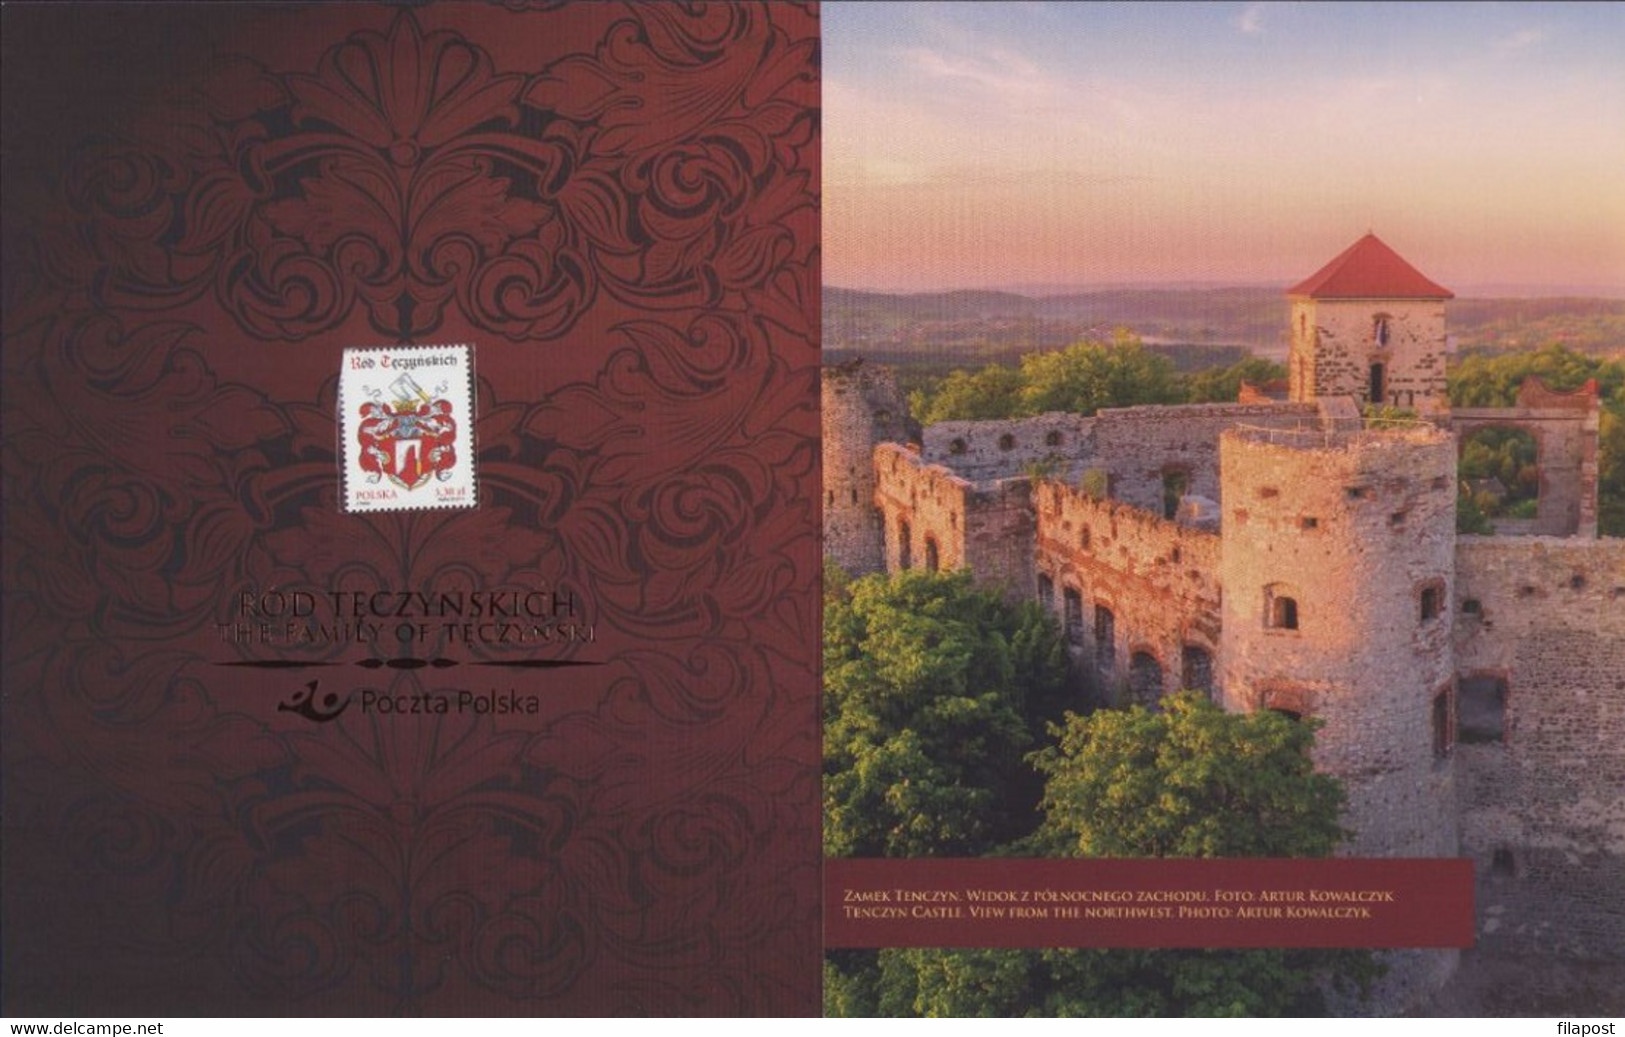 POLAND 2019 Booklet / The Family Of Teczynski, Kingdom Of Poland, Piast Dynasty, Jagiellon Dynasty / With Stamp MNH** - Postzegelboekjes